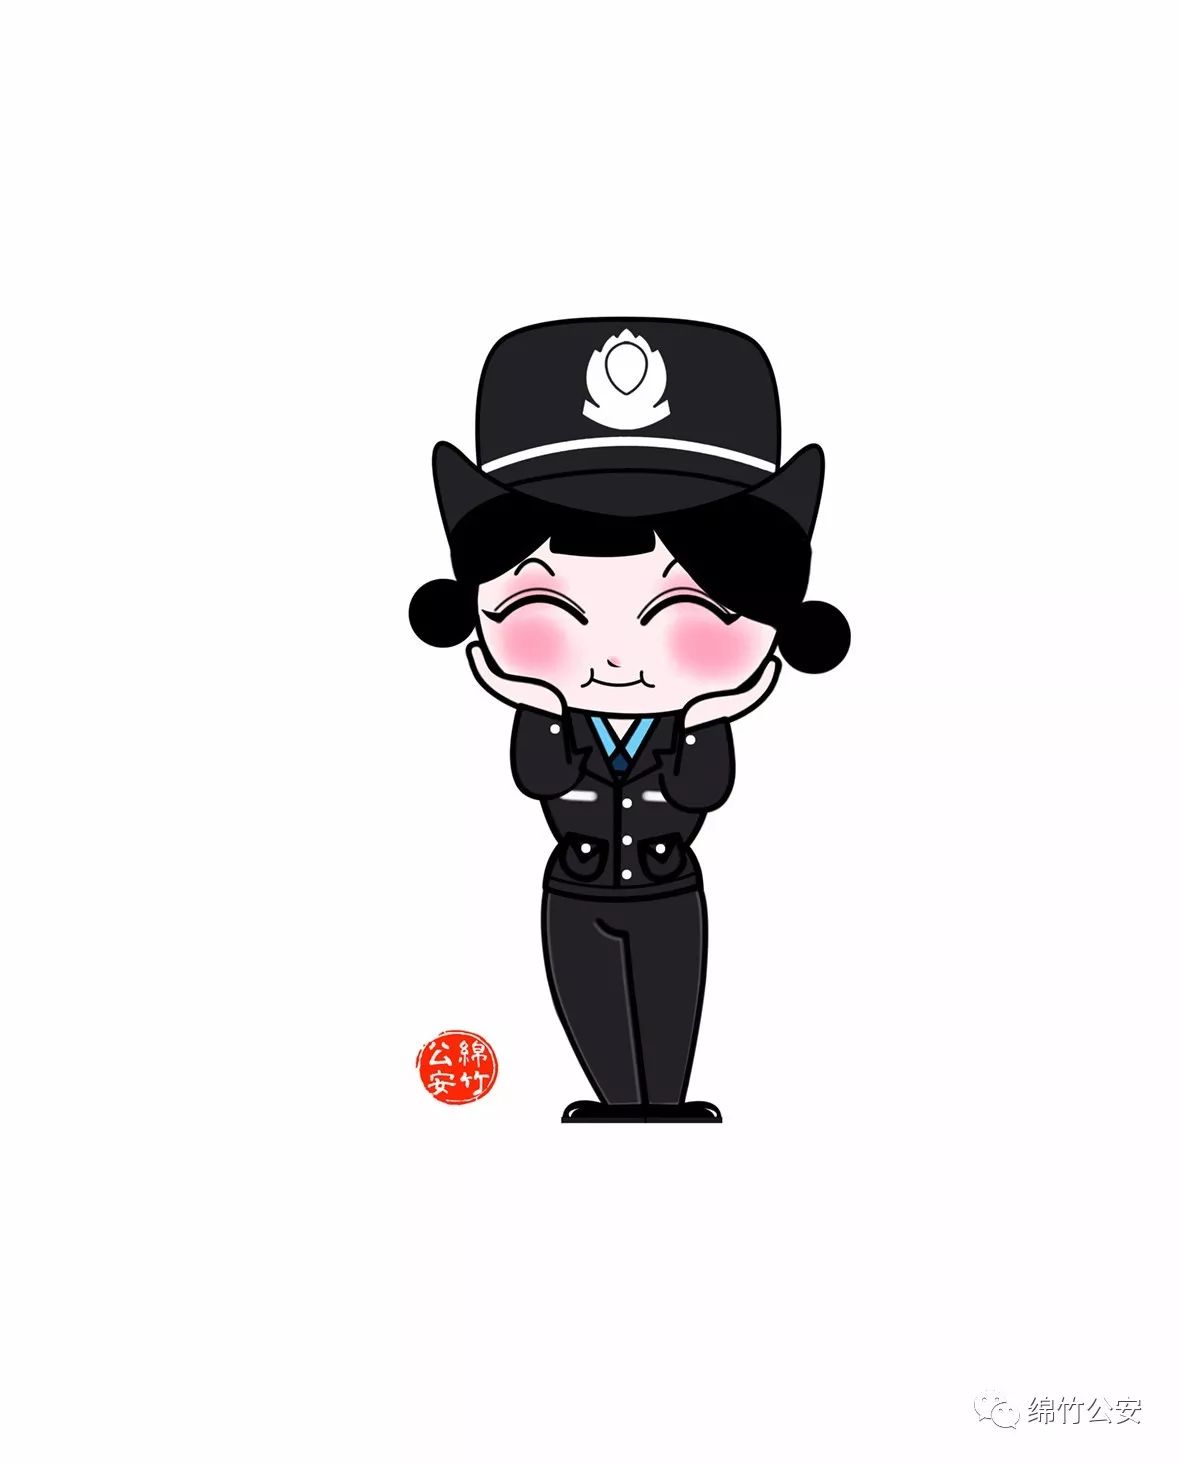 【双12的特别礼物】超萌的绵竹年画卡通警察表情全网赠送,拿走不谢!